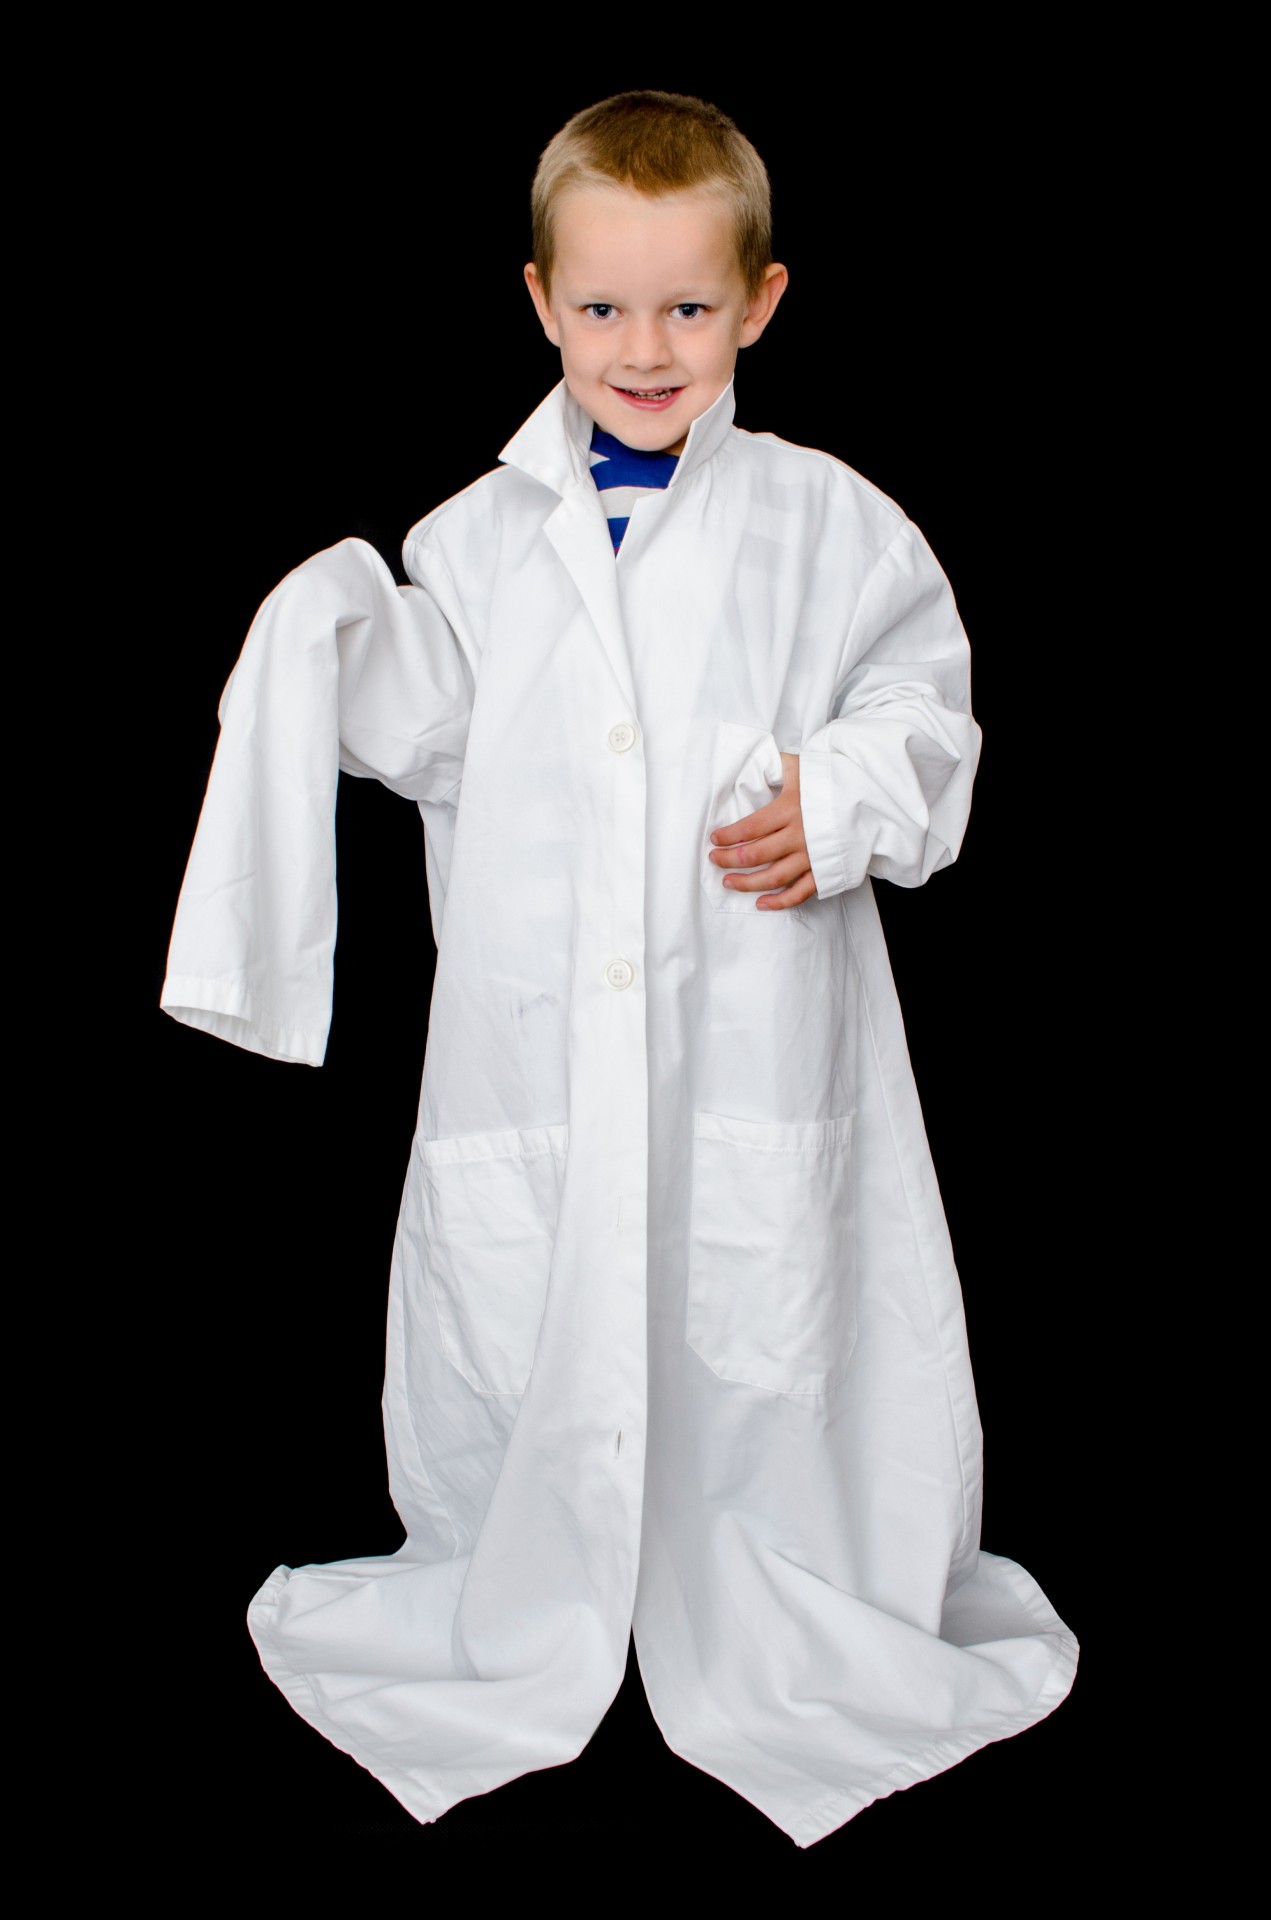 Enfant dans le manteau de médecin blanc